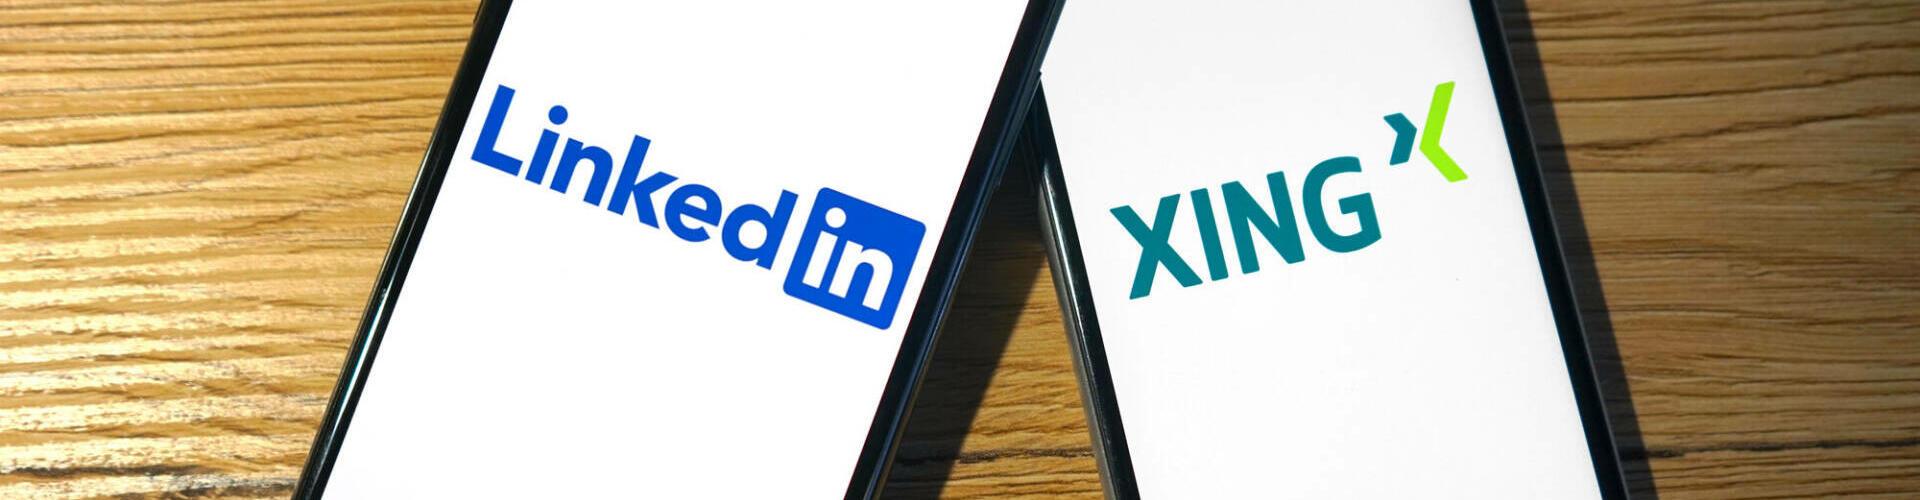 Logos von LinkedIn und Xing werden auf zwei Smartphones angezeigt